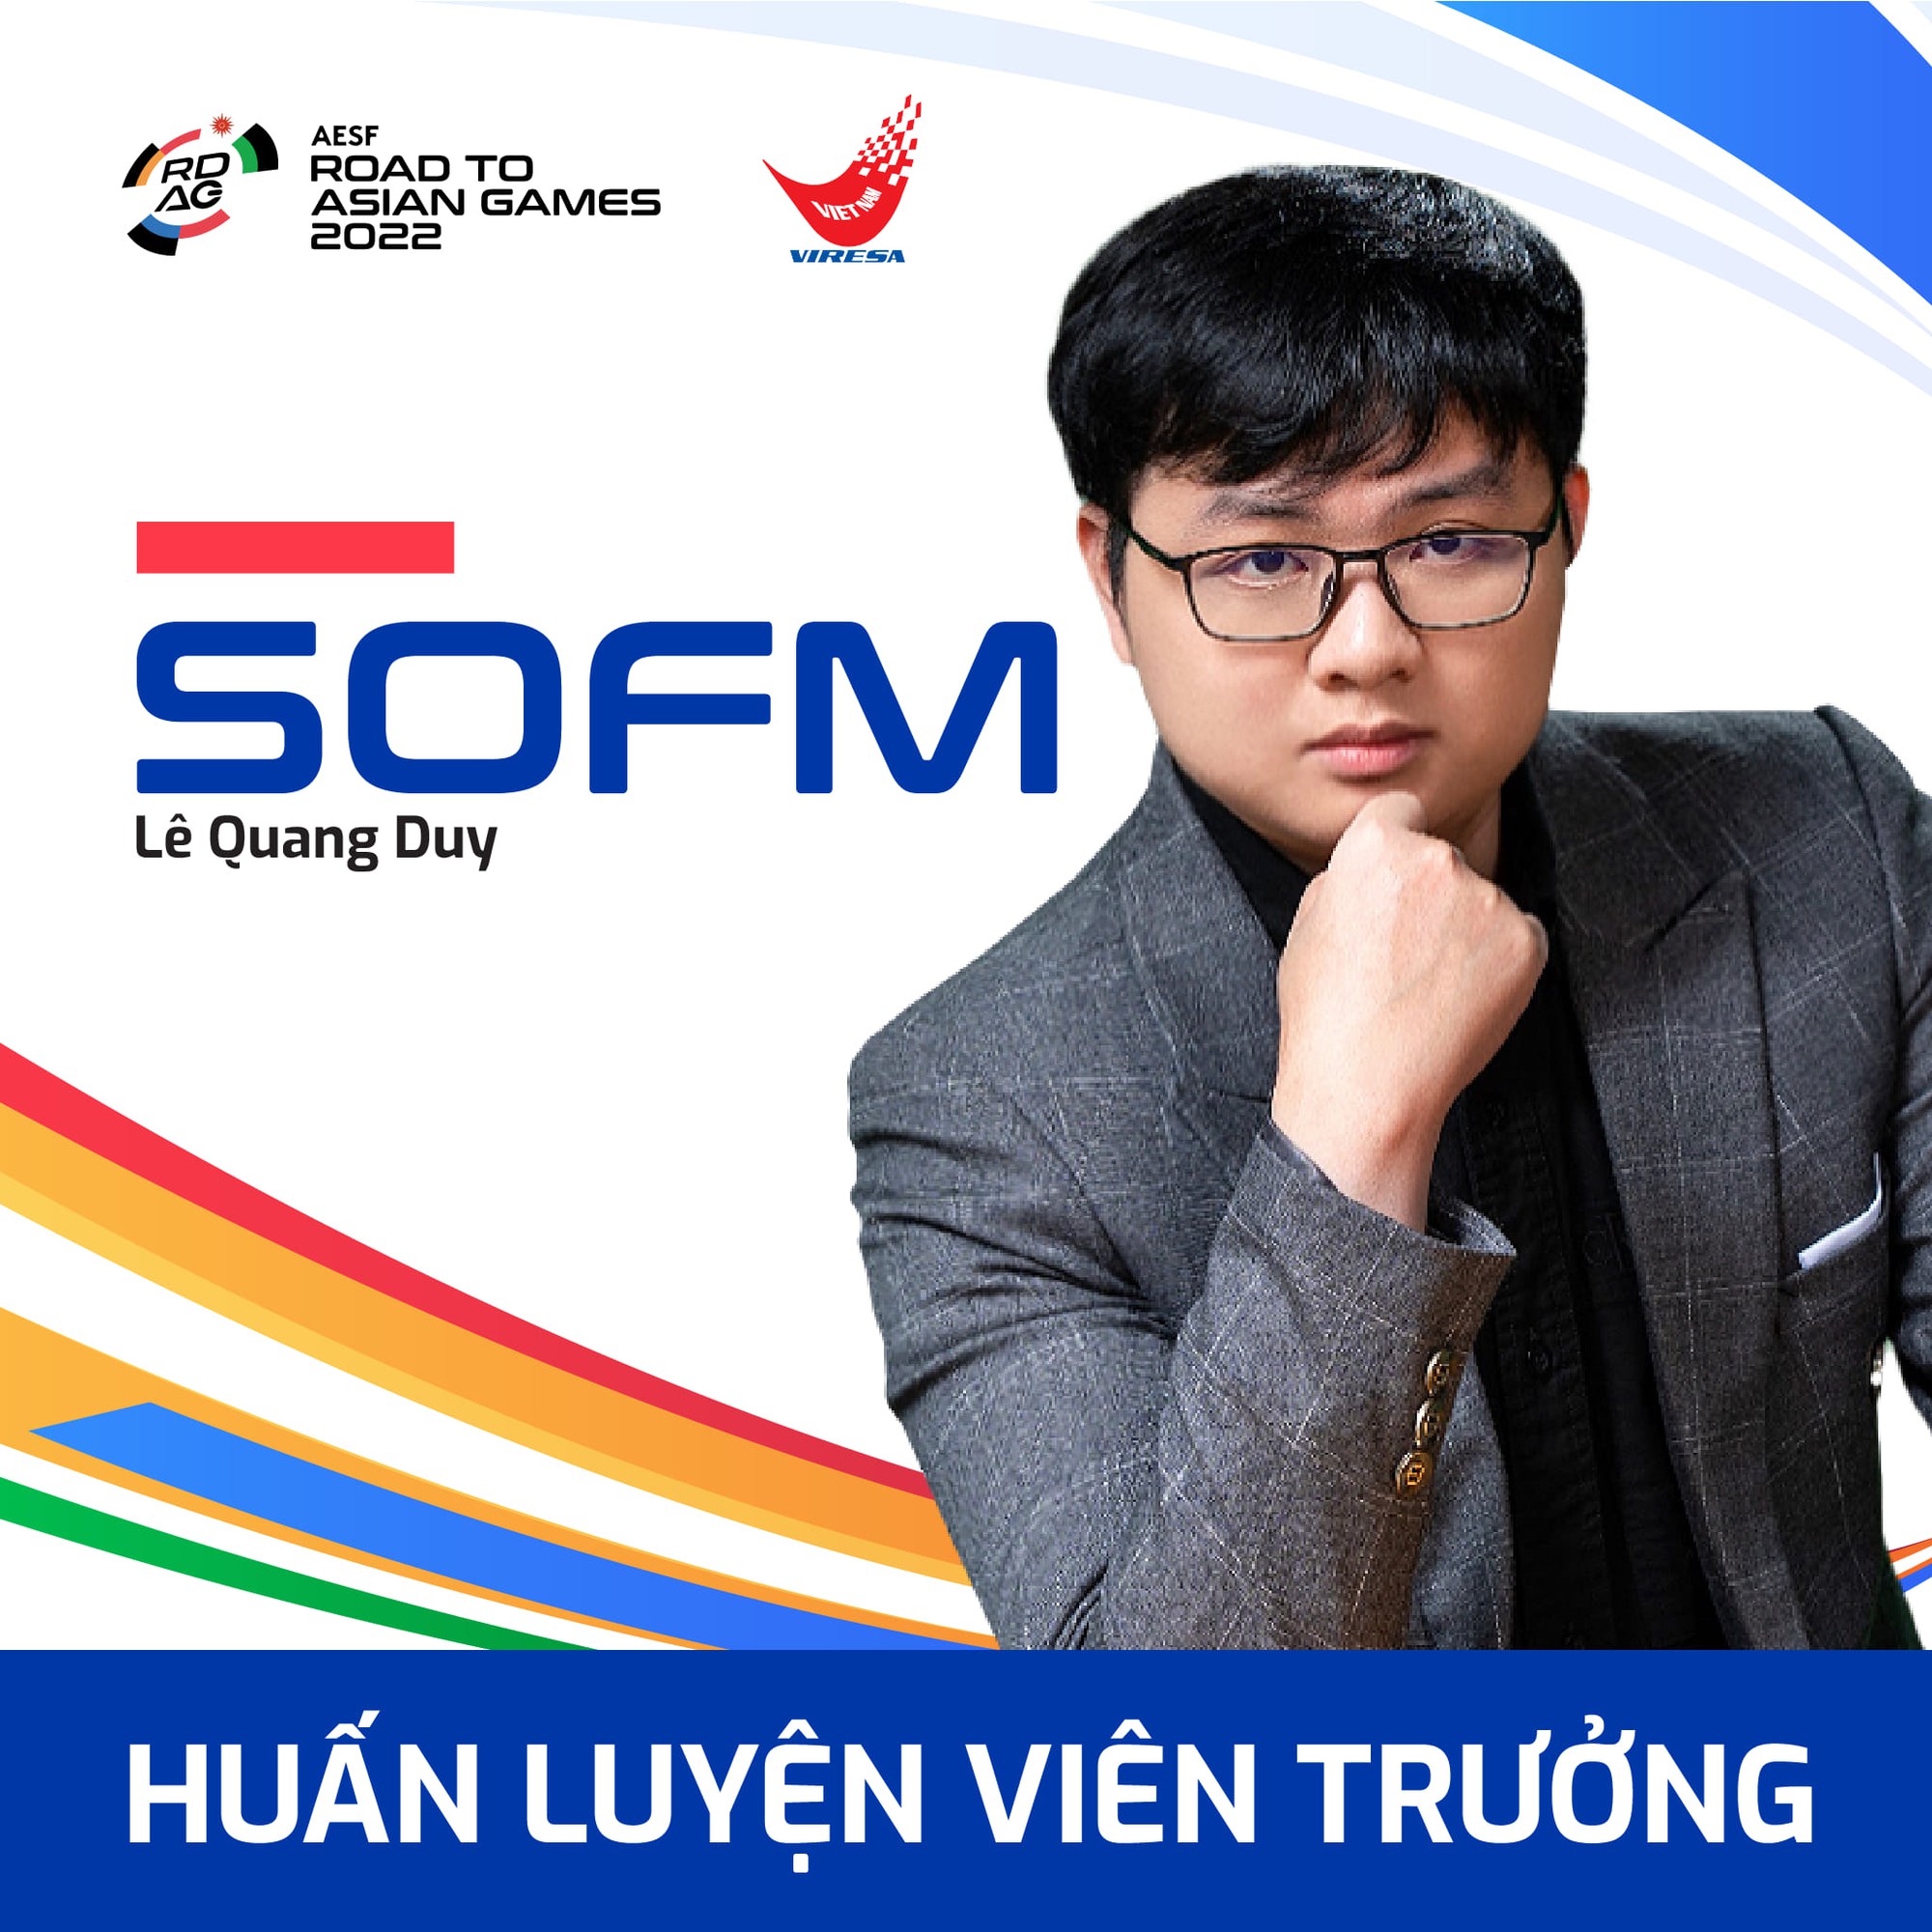 SofM được kì vọng sẽ mang lối chơi bất ngờ cho tuyển Việt Nam